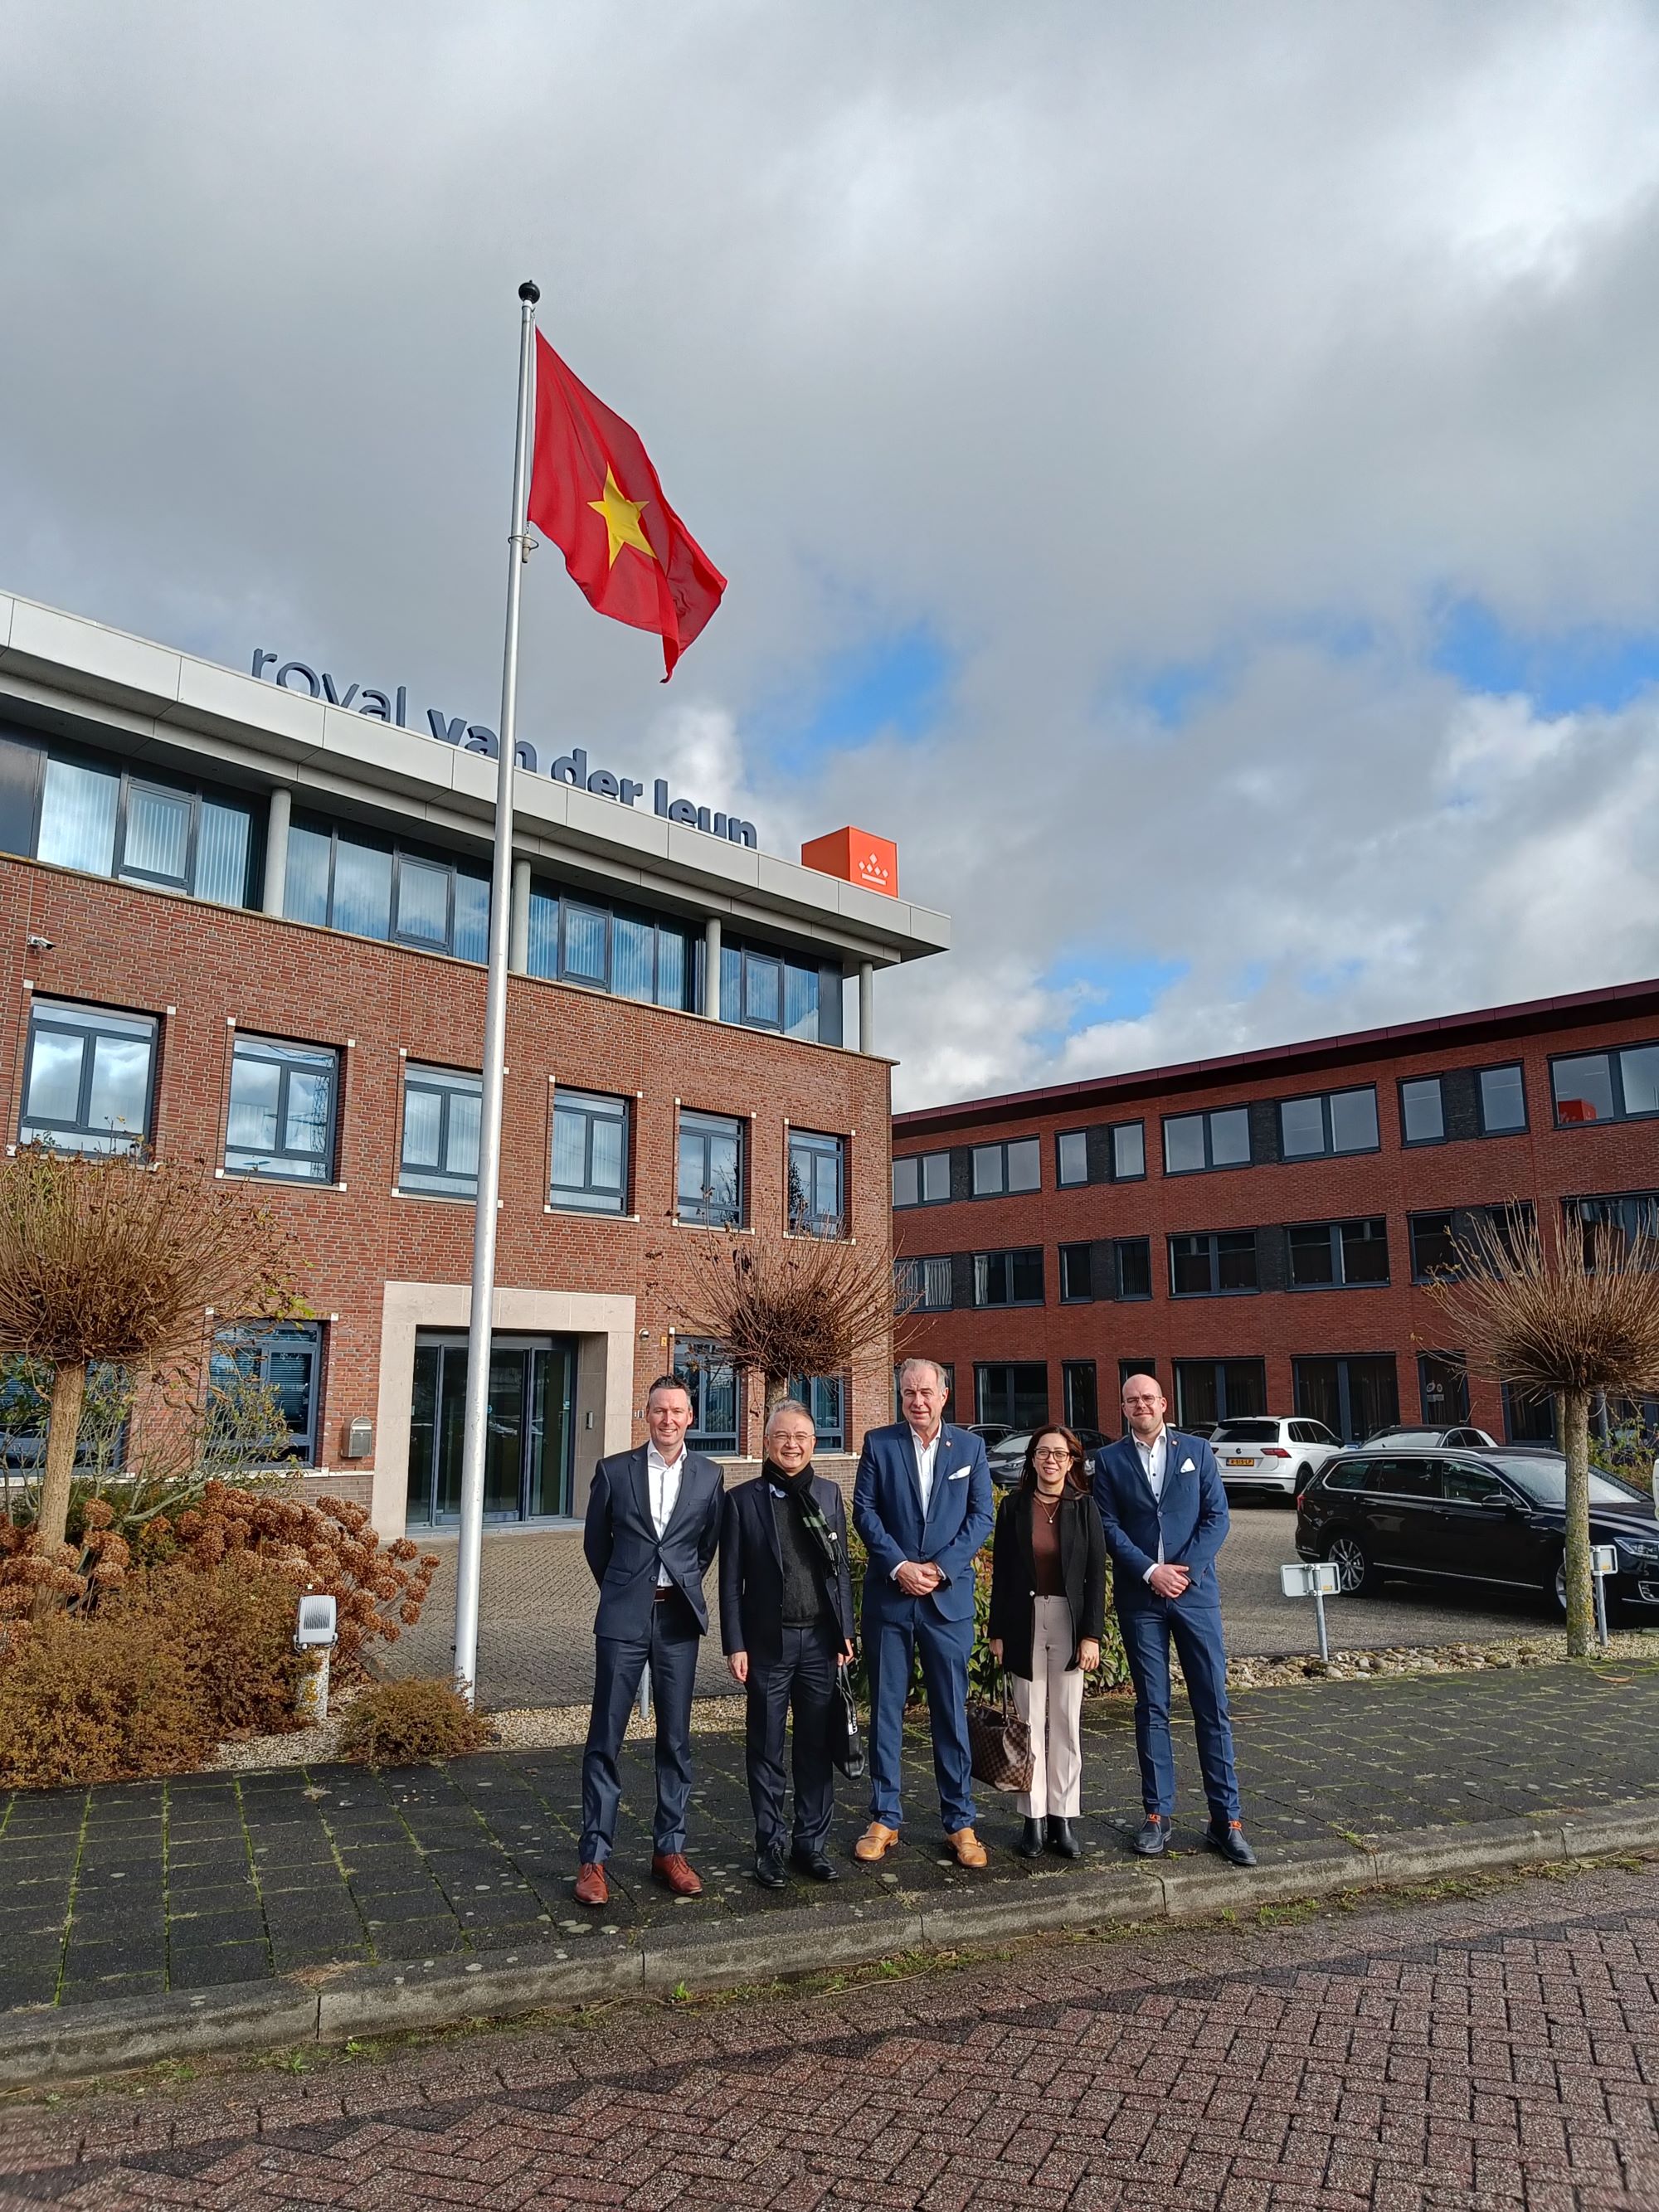 delegatie-vietnamese-ambassade-poseert-bij-vietnamese-vlag-hoofdkantoor-royal-van-der-leun